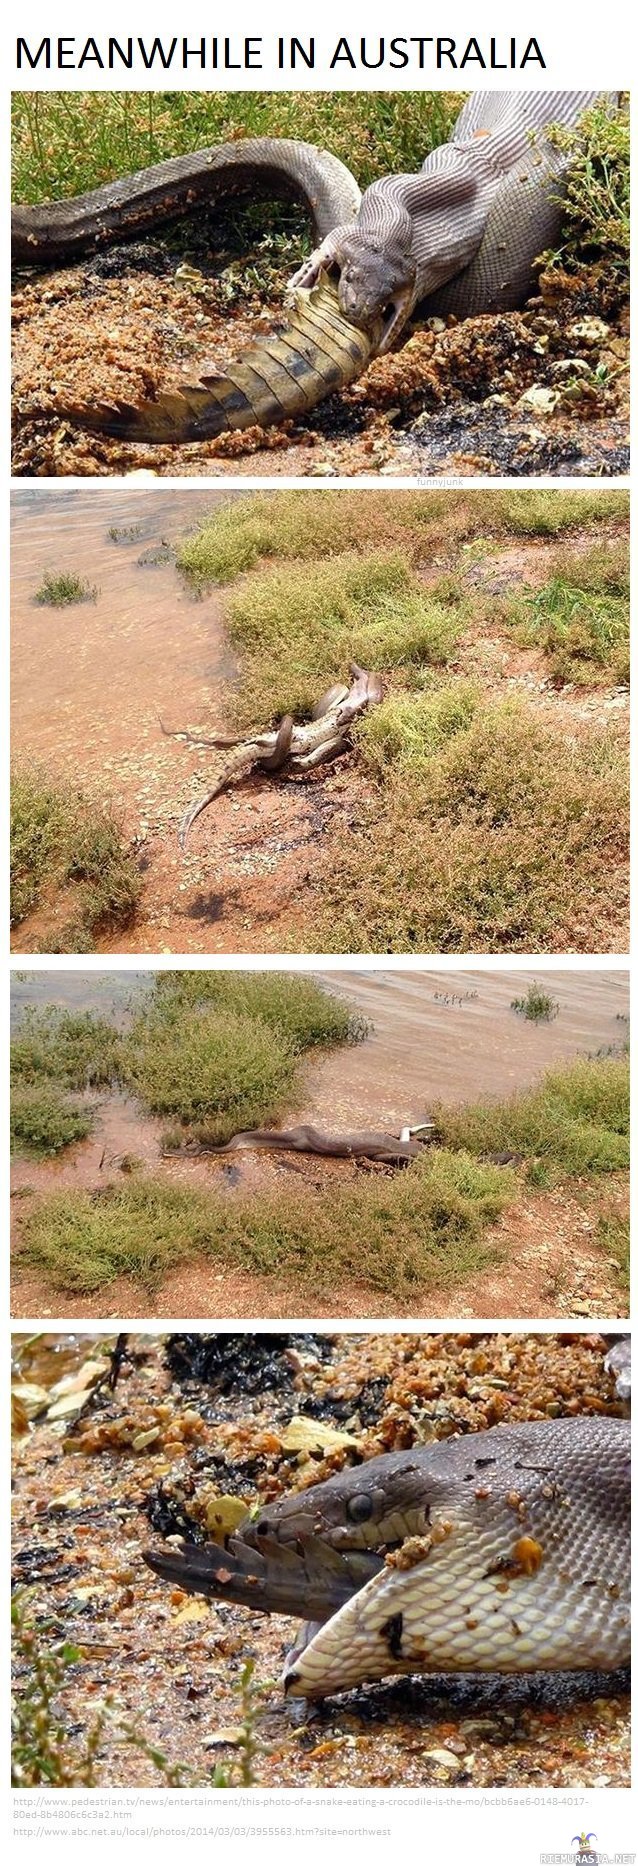 Sillävälin Australiassa - Käärme syö krokotiilia Australiassa, ihan perus arkipäivää saarivaltiossa